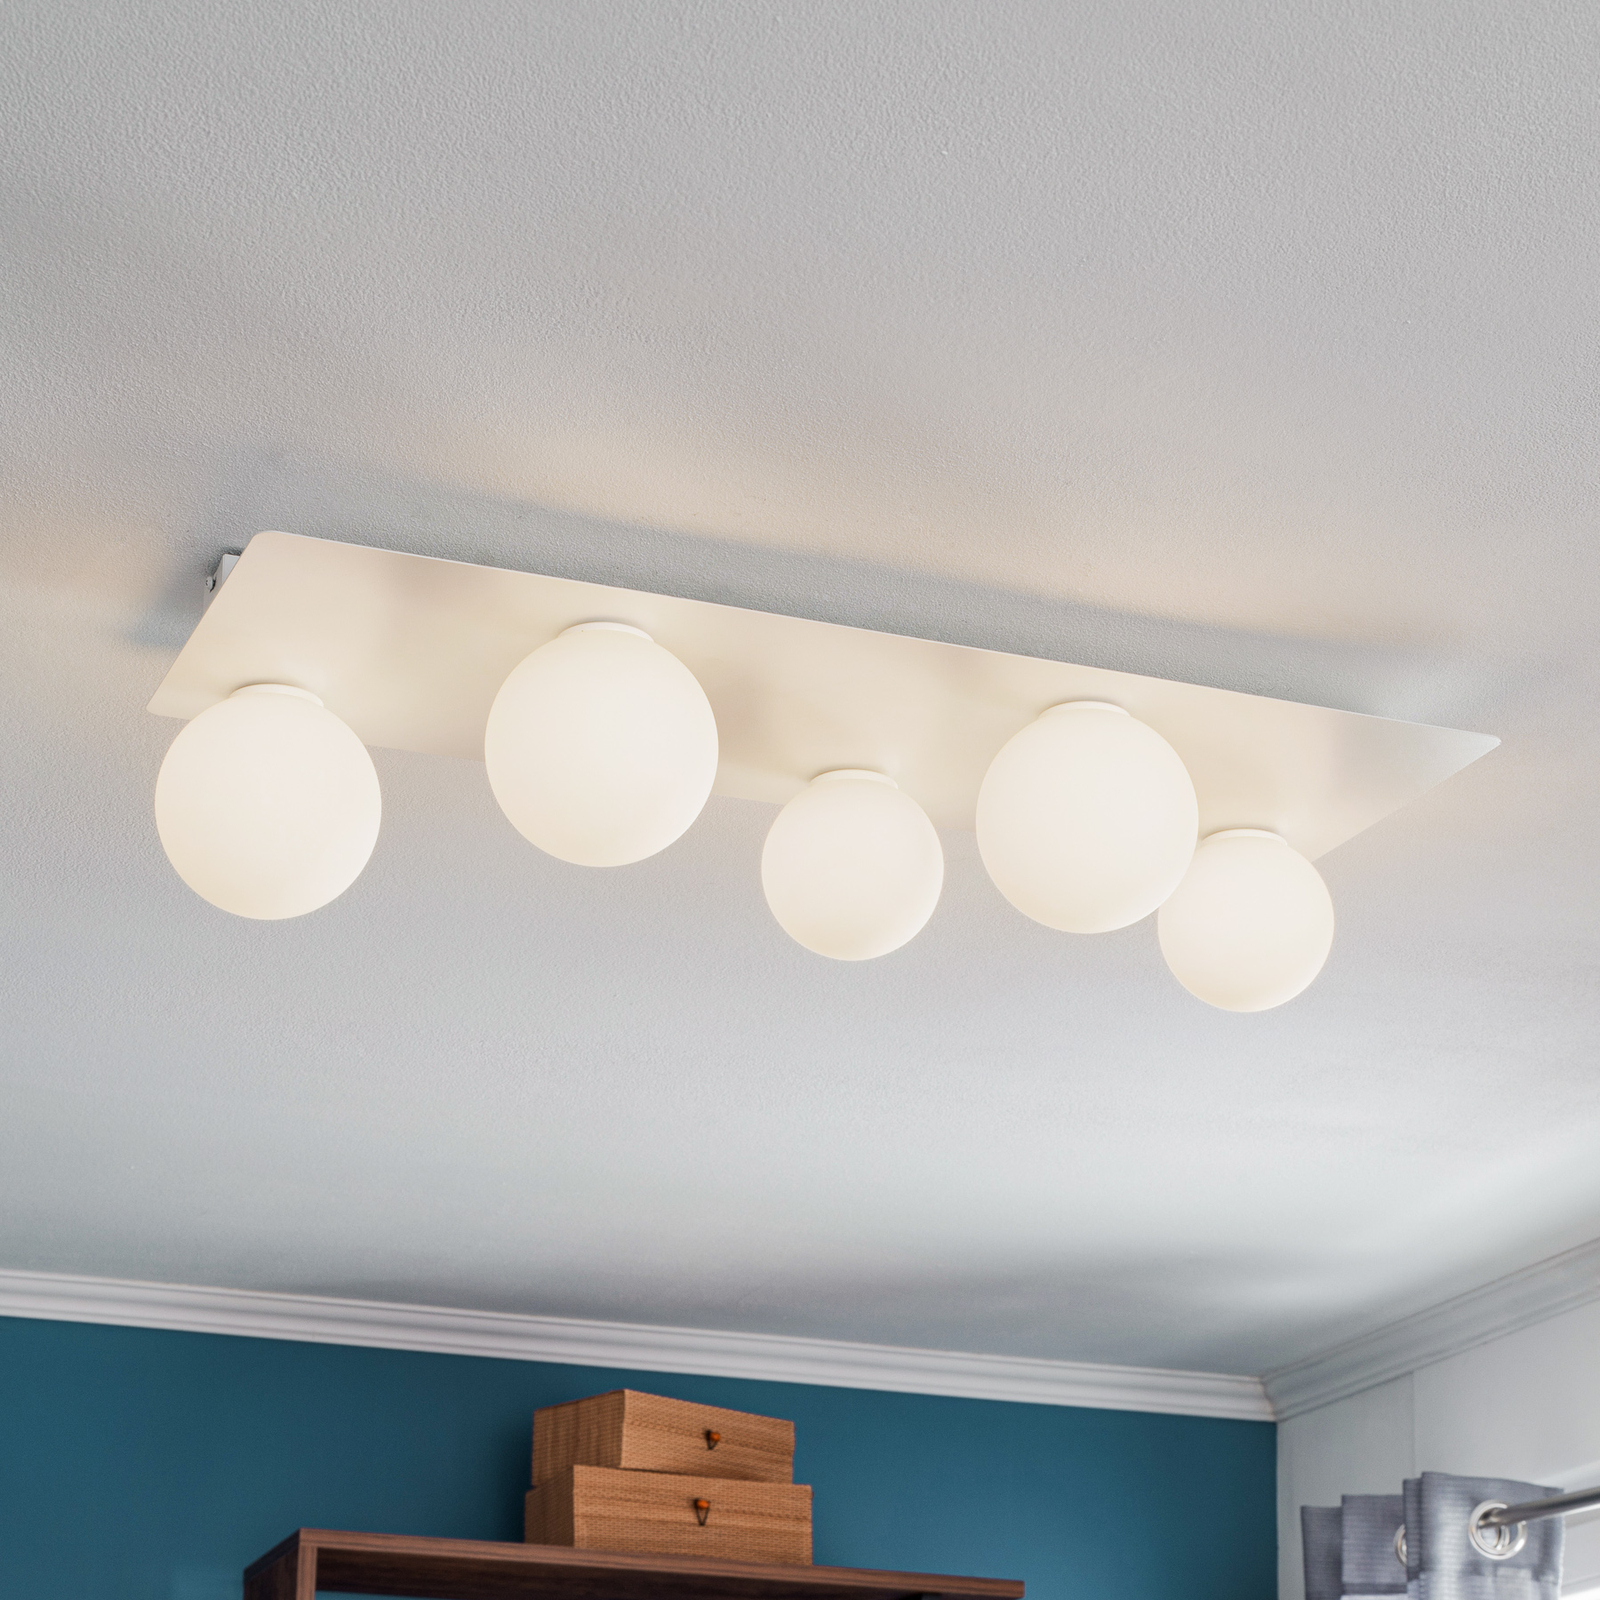 Firn ceiling light, angular, five-bulb, white